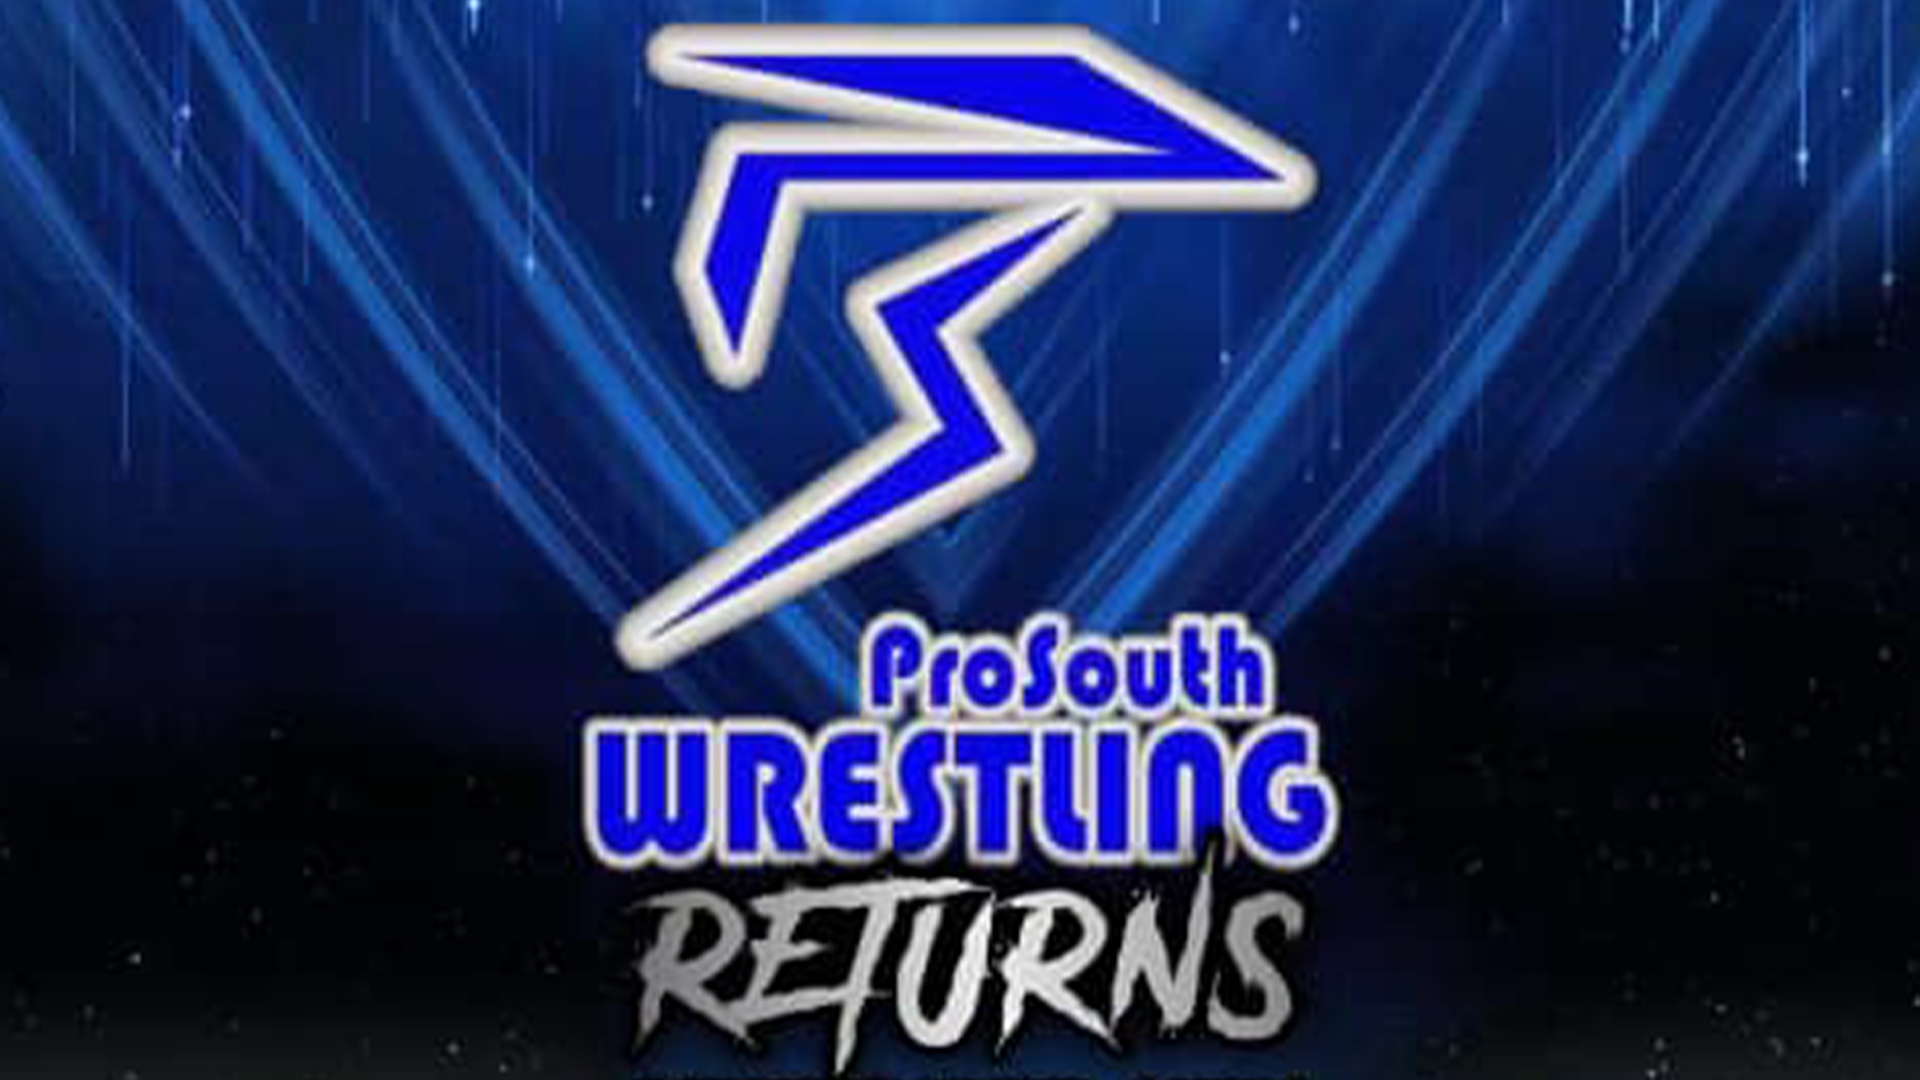 Résultats de Pro South Wrestling The Return